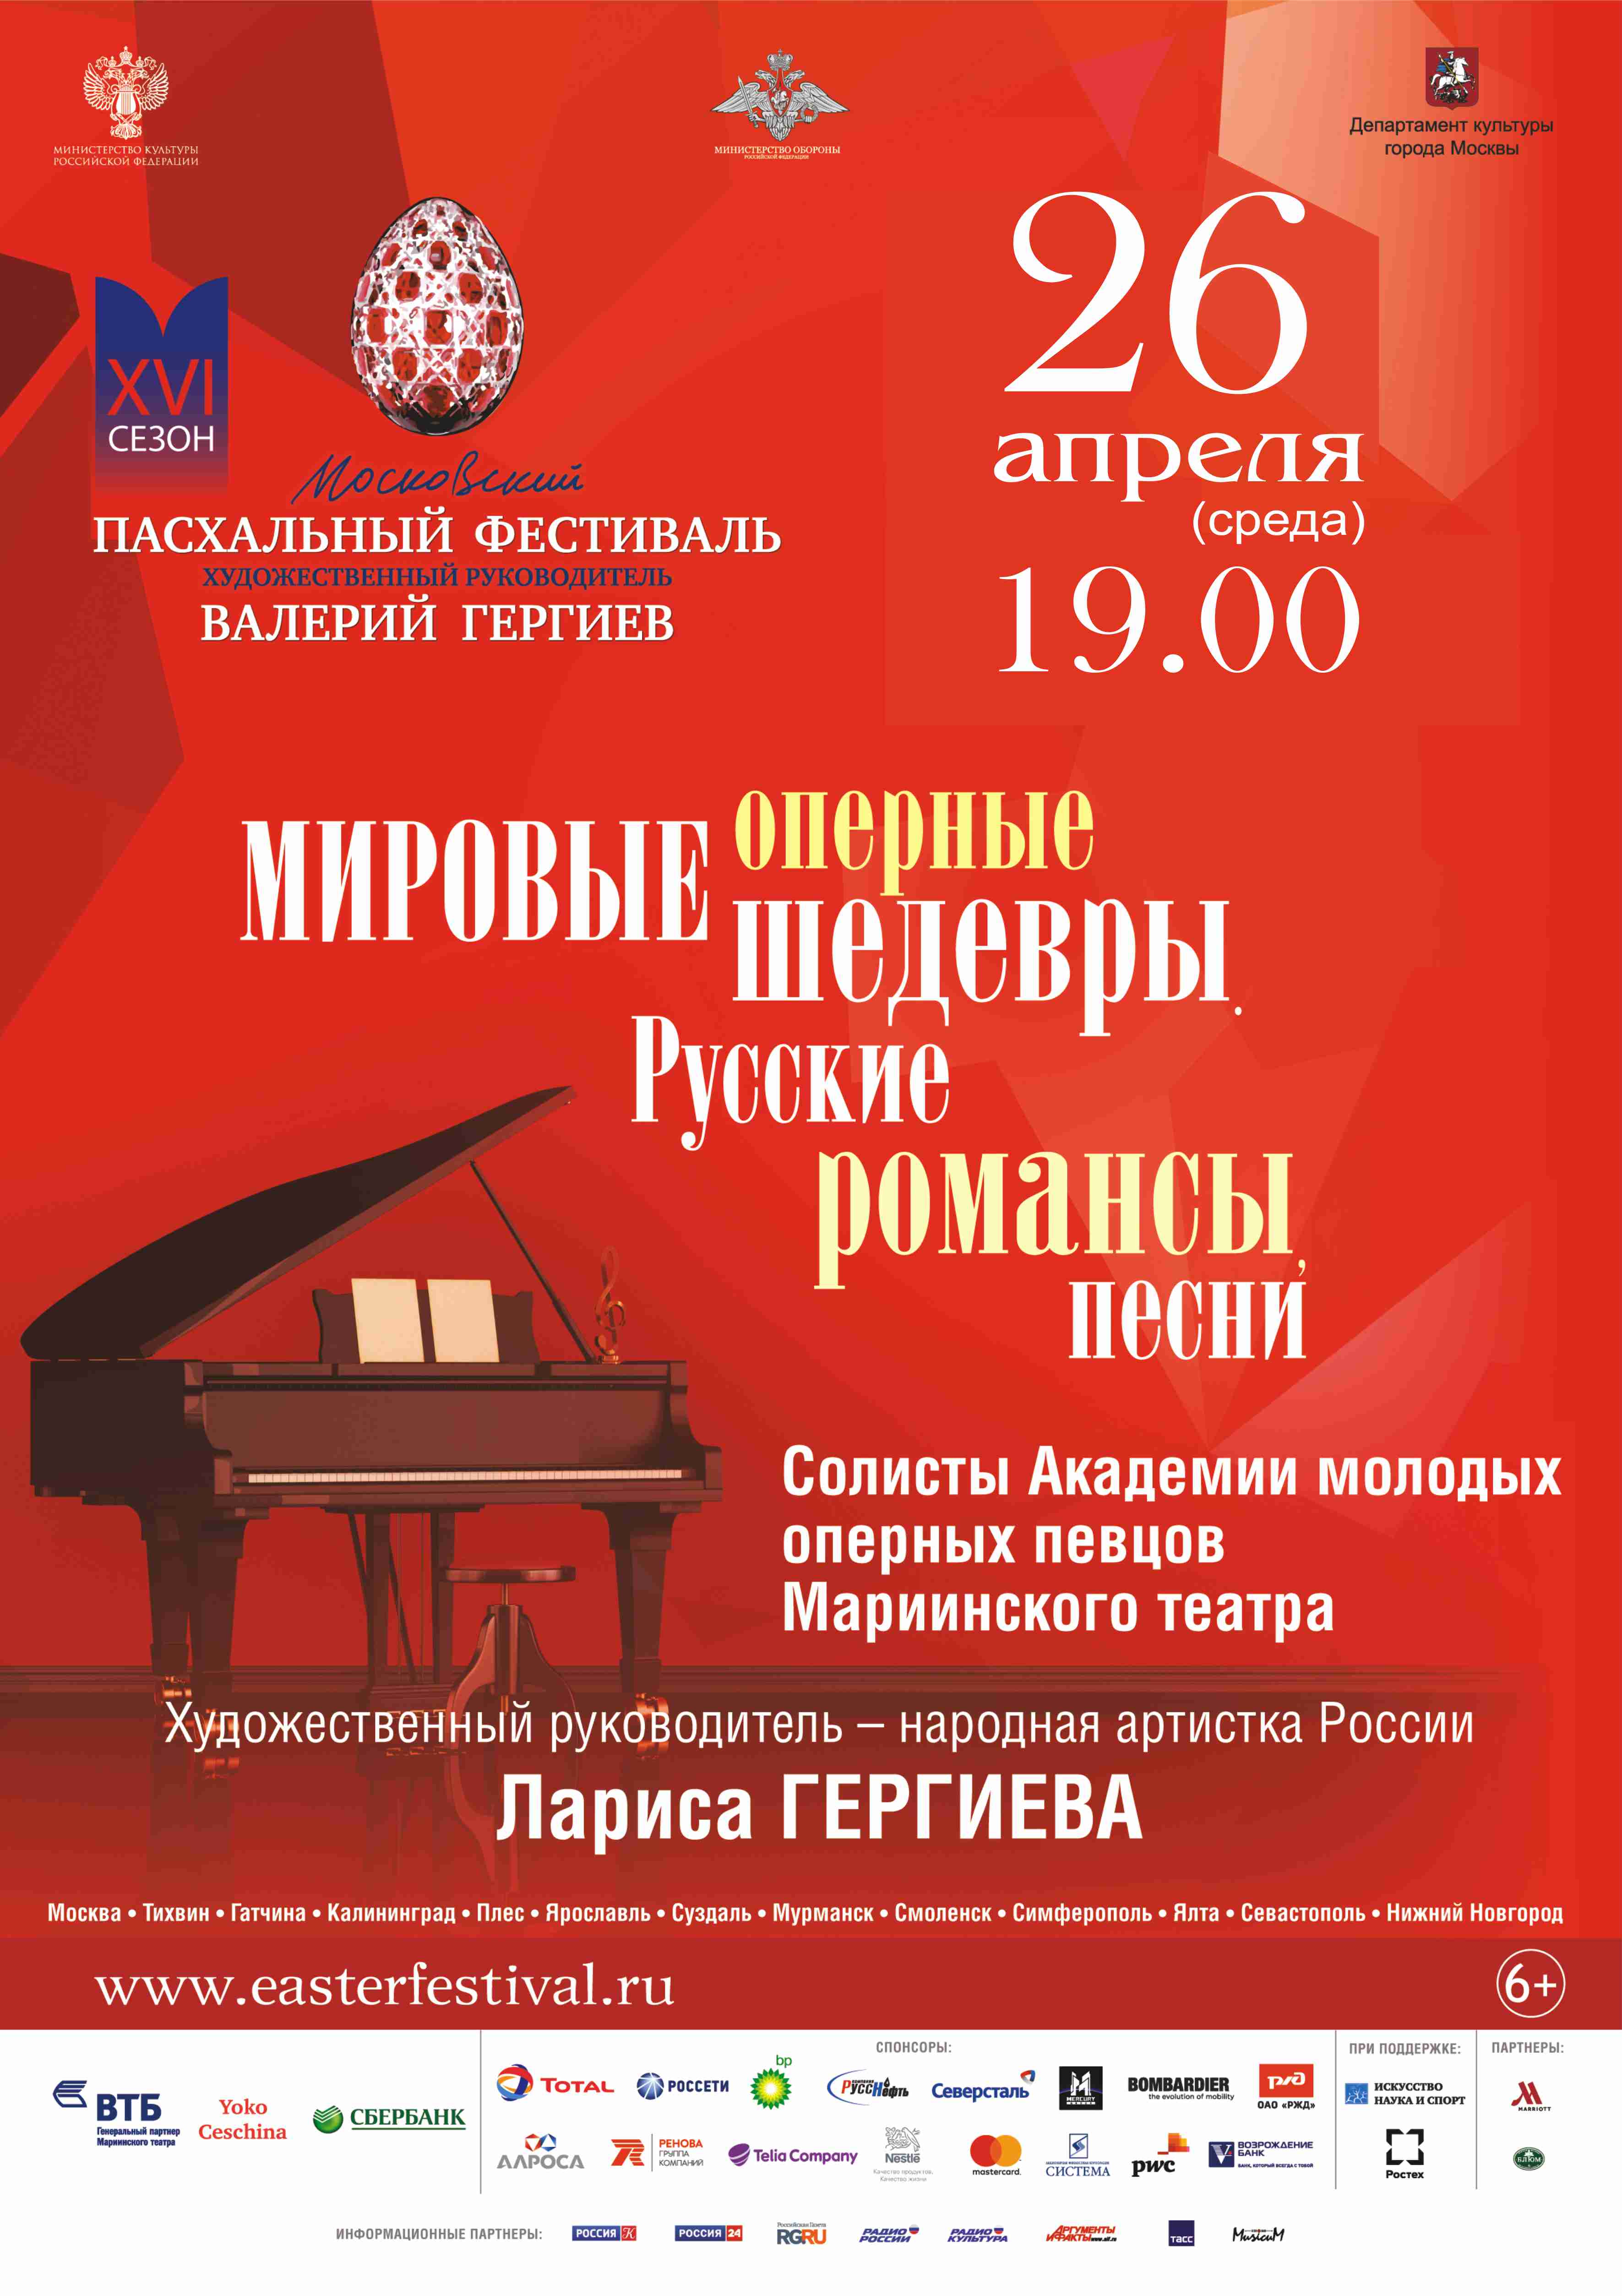 Академия молодых оперных певцов Мариинского театра